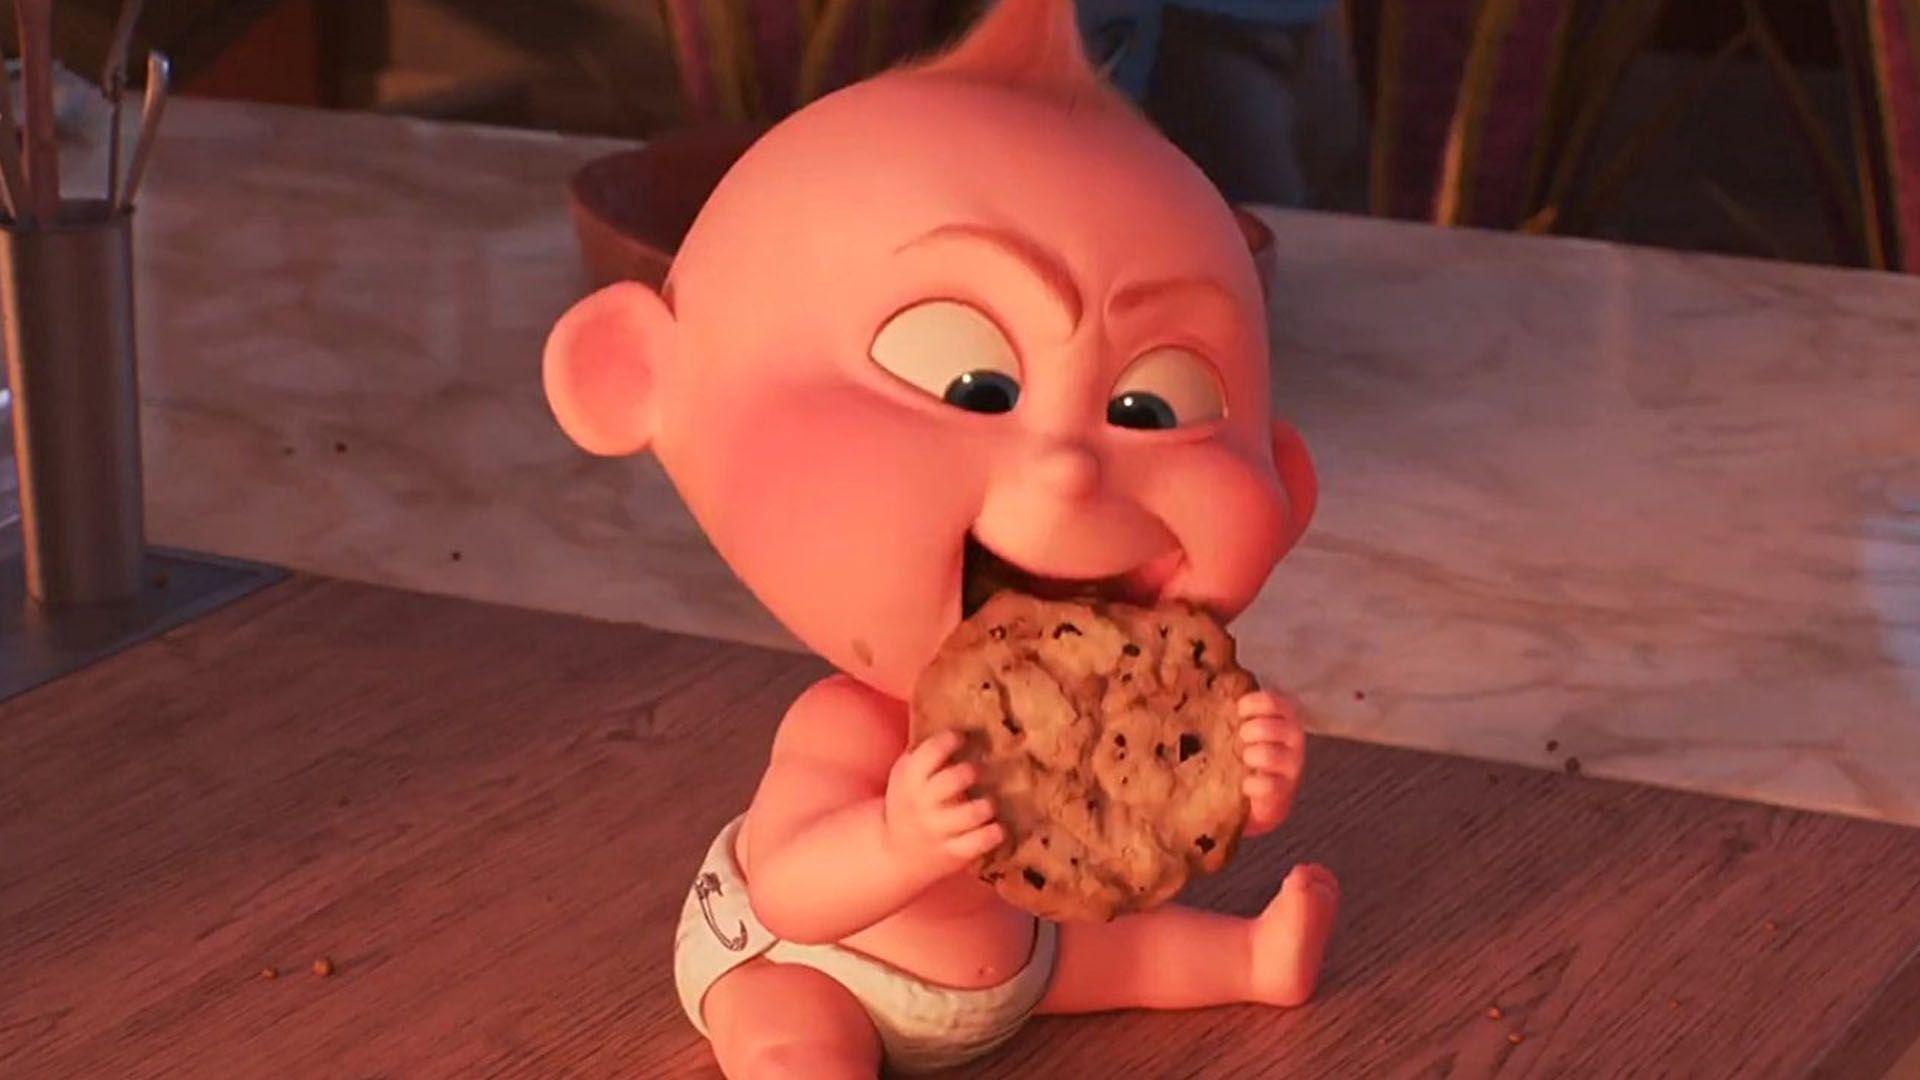 Jack Jack Powers Up In Disney Pixar's “Incredibles 2”